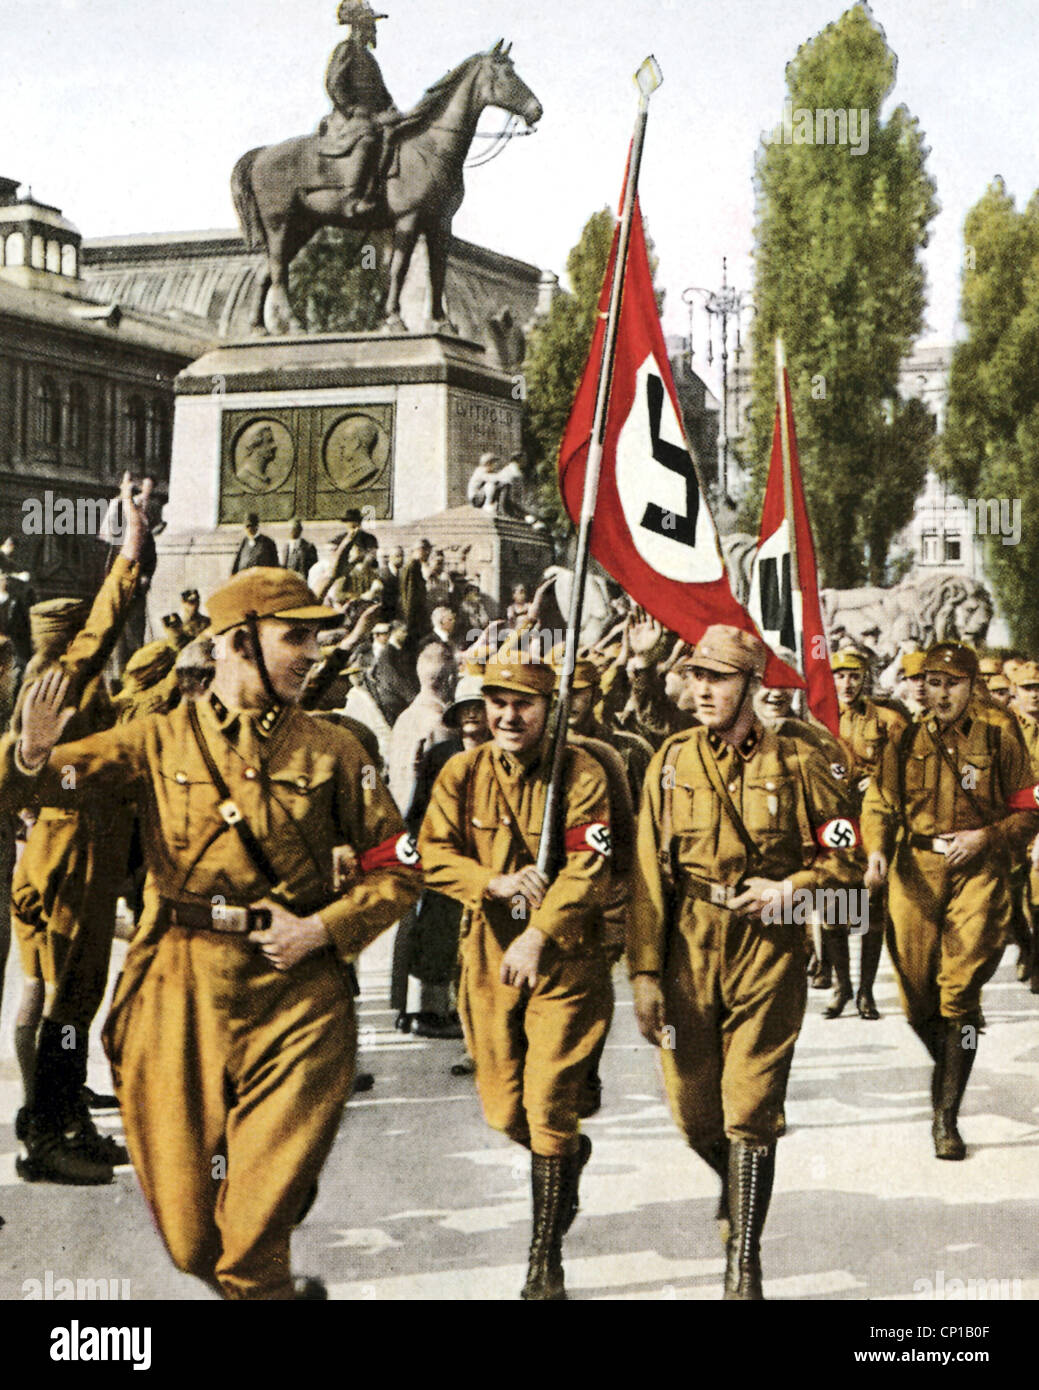 Wessel, Horst, 9.10.1907 - 23.2.1930, attivista nazista tedesco, mezza lunghezza, come leader di un'unità SA a Norimberga 1929, foto colorata, dettaglio con H. Wessel, Foto Stock